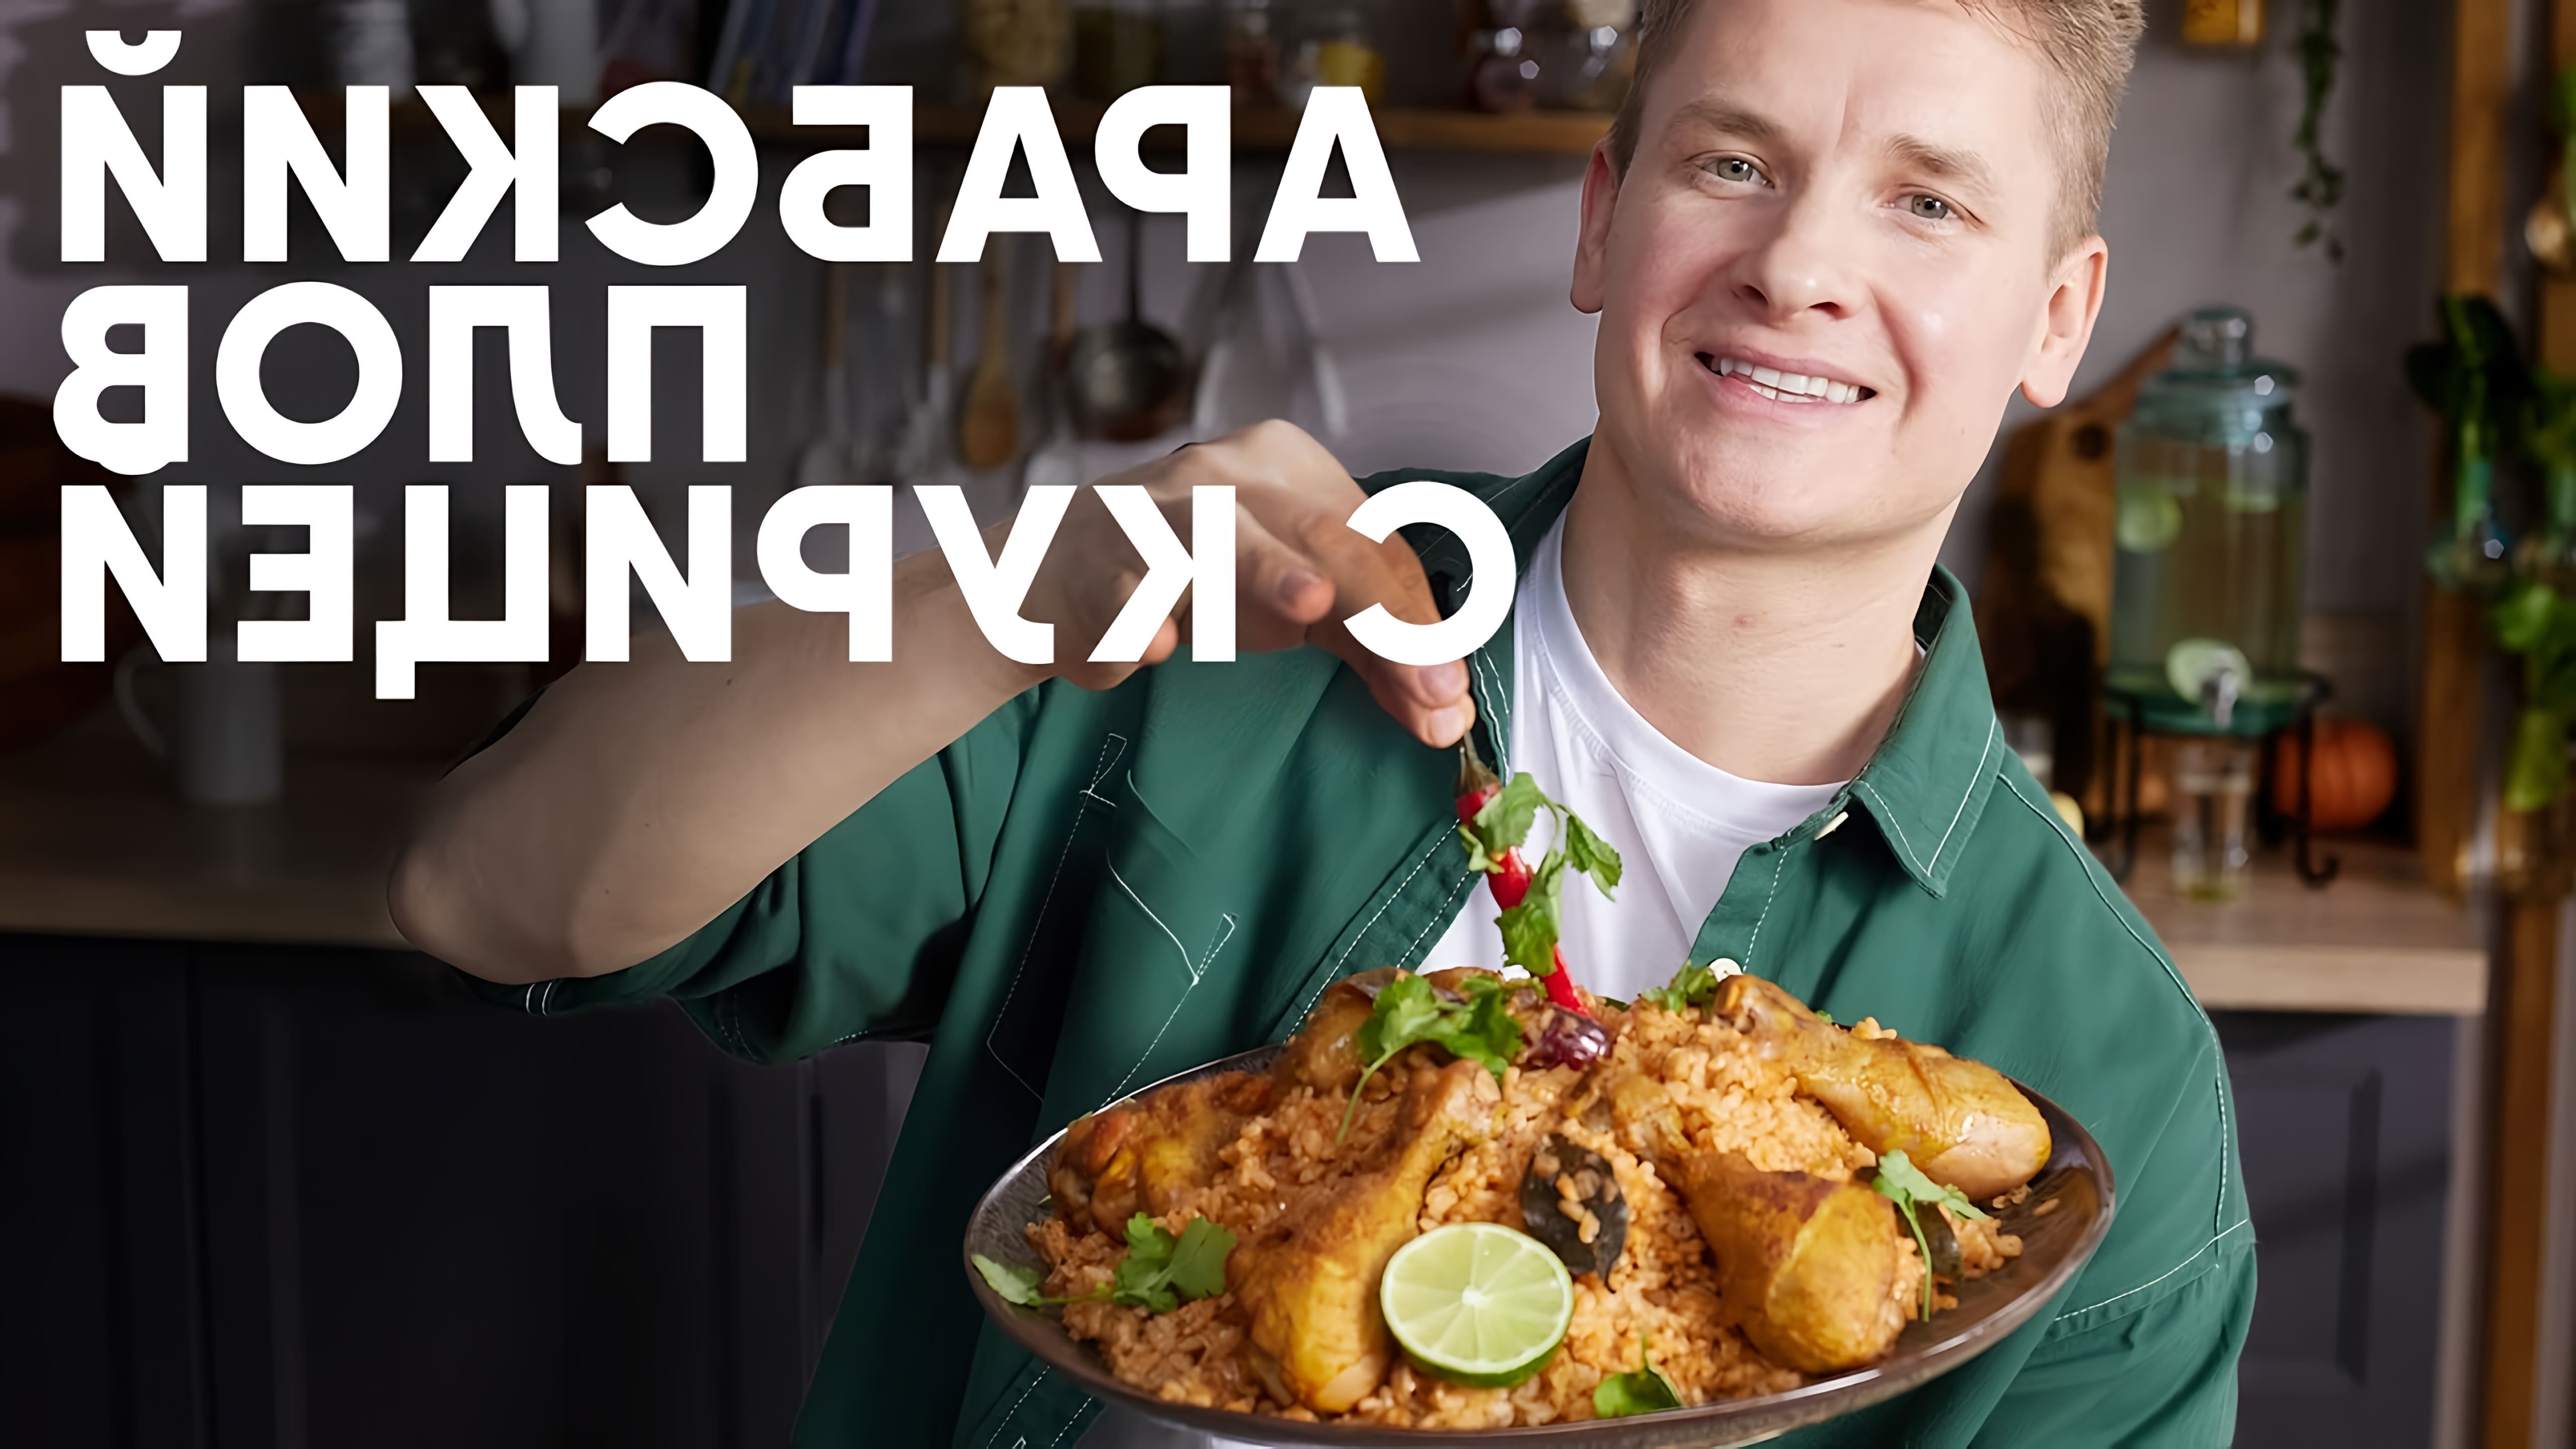 В этом видео шеф-повар Белькович представляет рецепт арабского плова, который готовится из риса и курицы